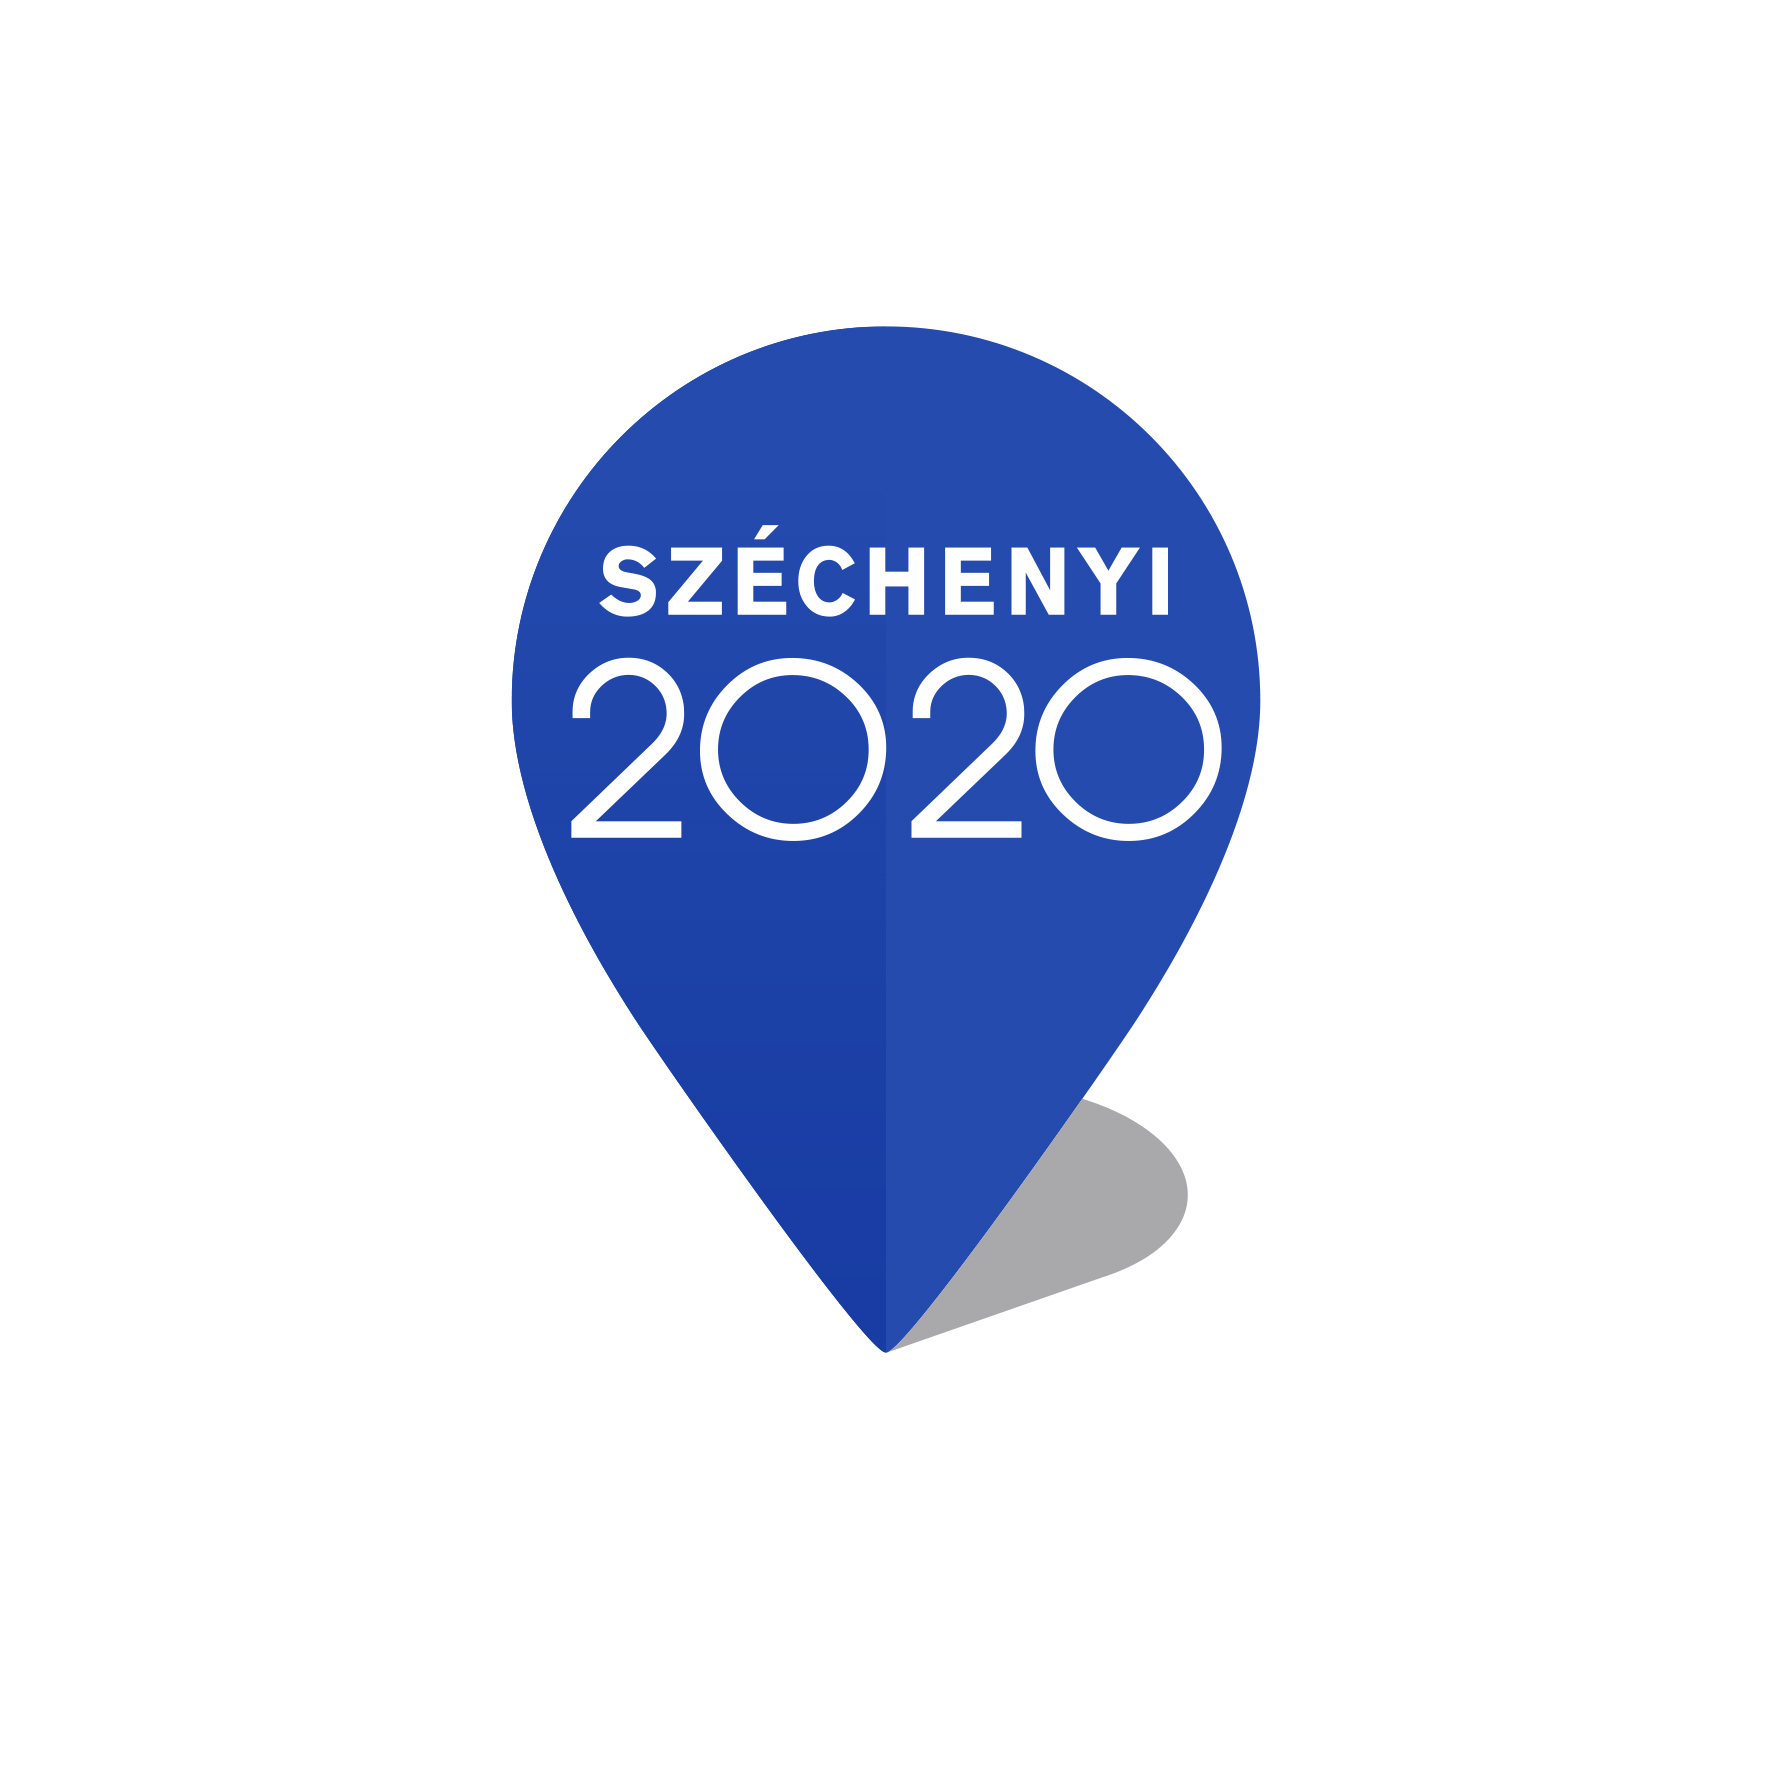 szechenyi 2020 logo allo color RGB